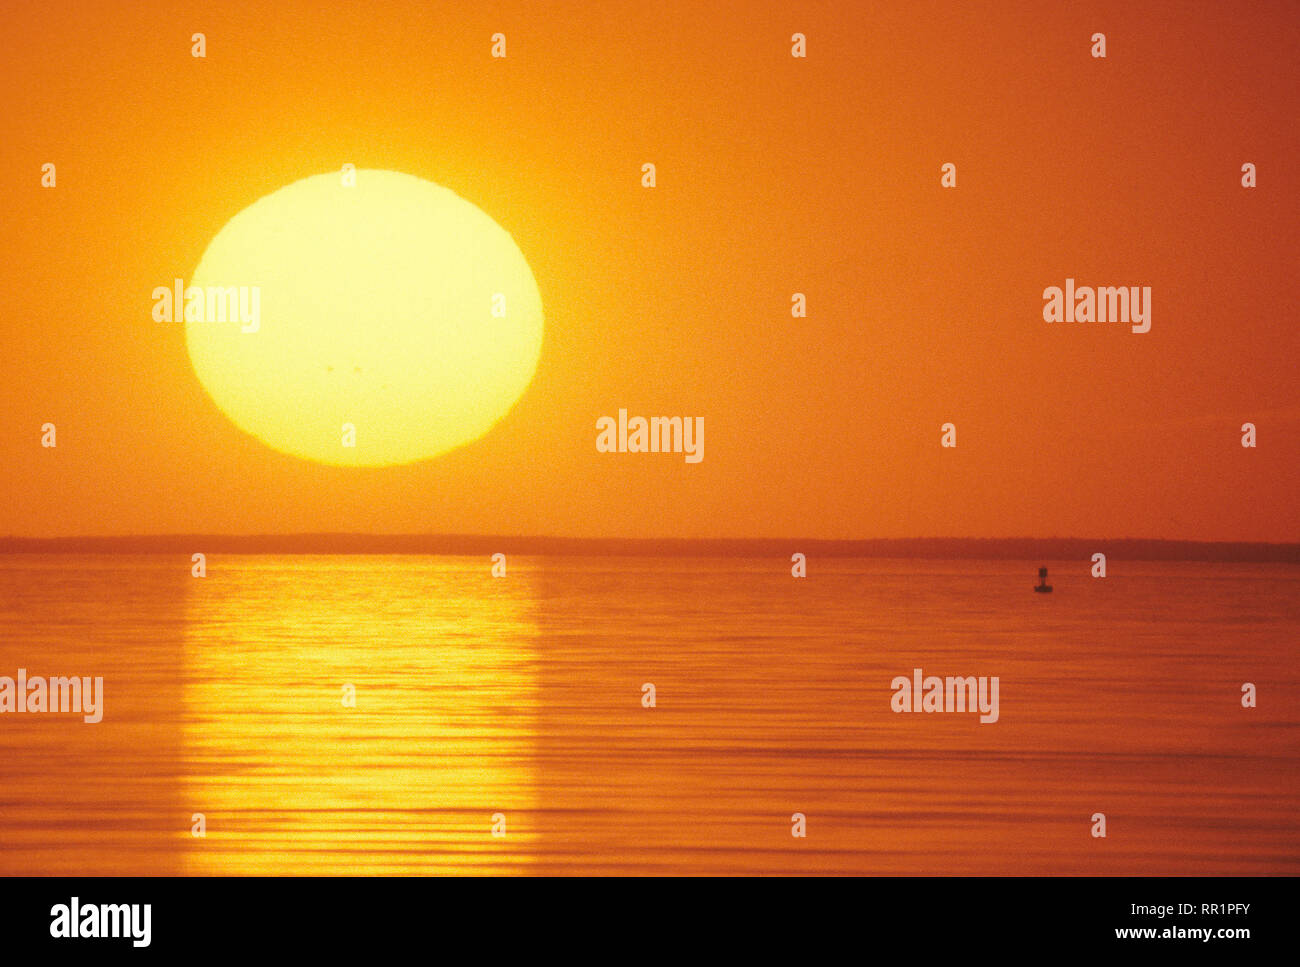 Le coucher de soleil vu à travers un long téléobjectif sur la baie de Cape Cod, USA Banque D'Images